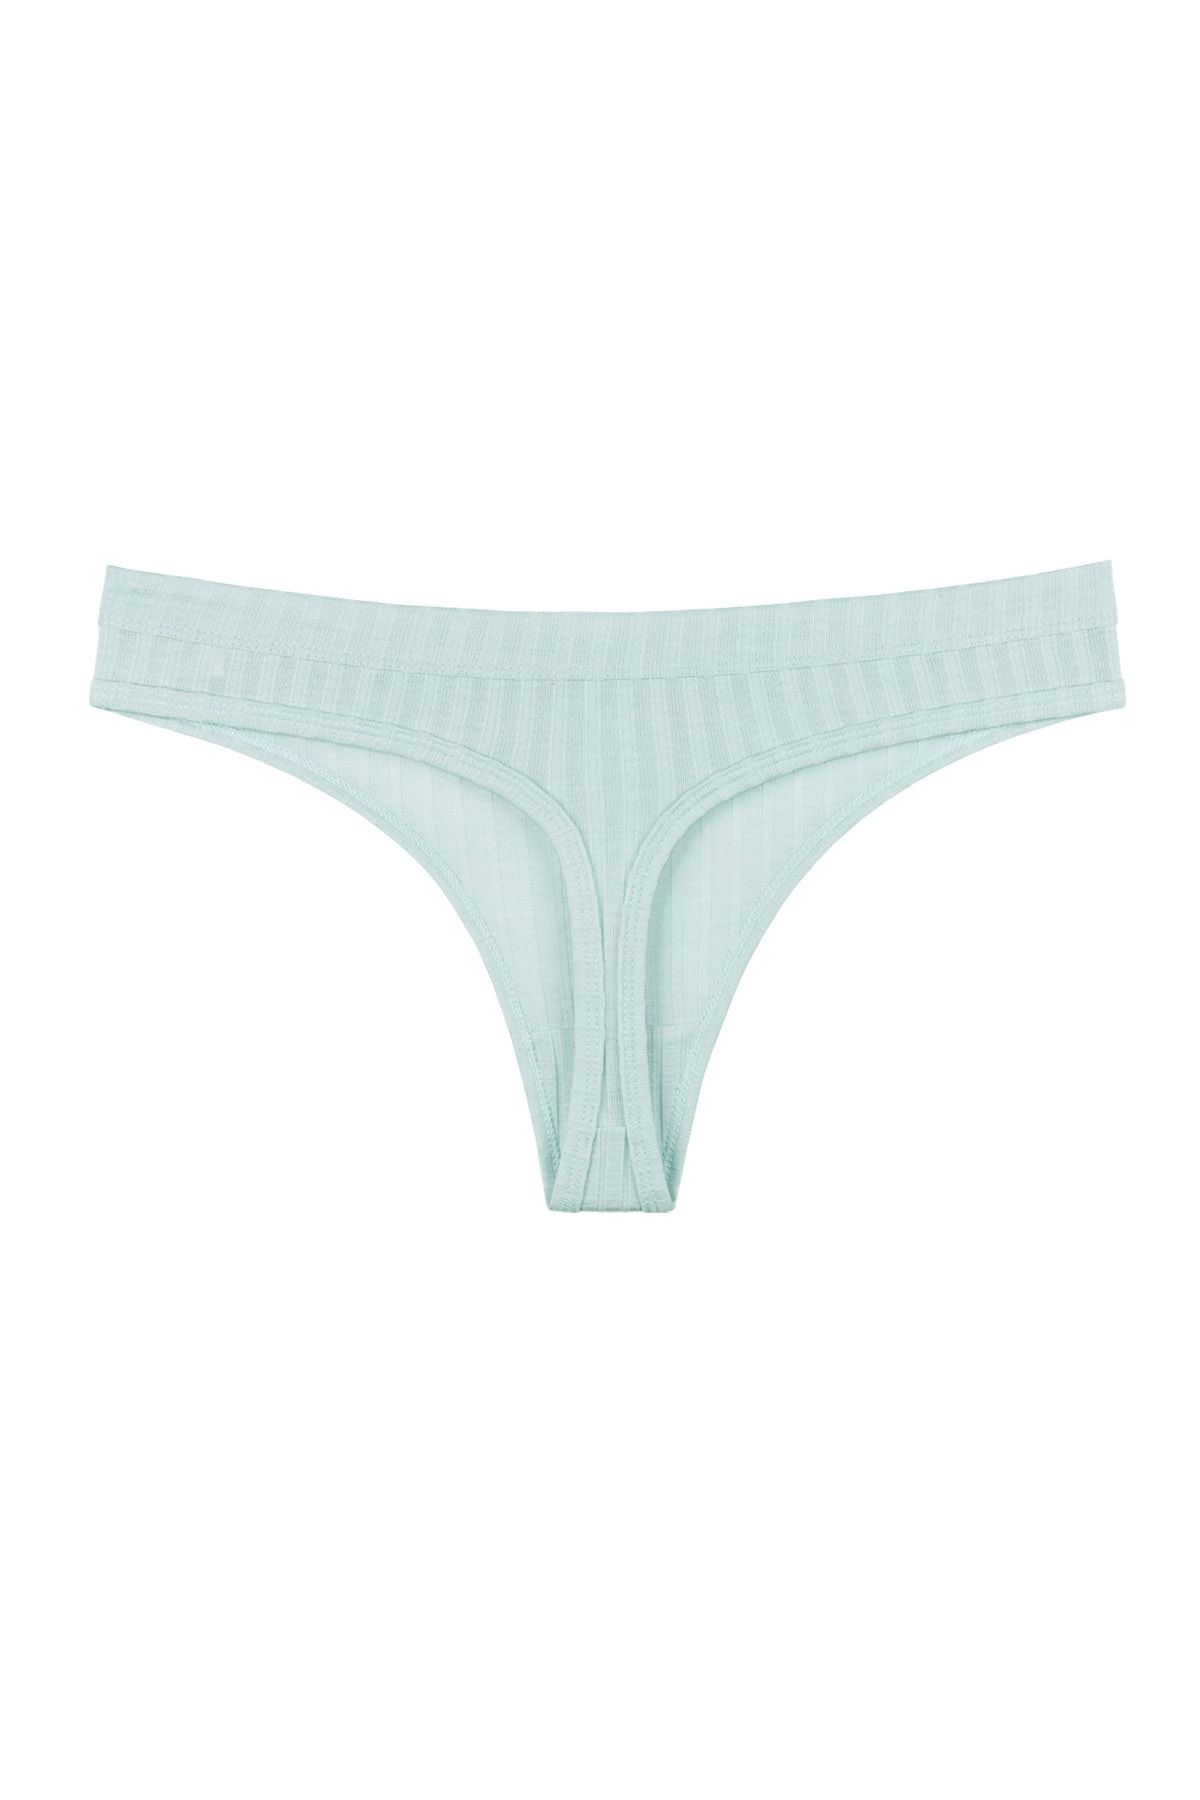 Sensu Women's High Waist Seamless Laser Cut Panties (ELASTY WAIST